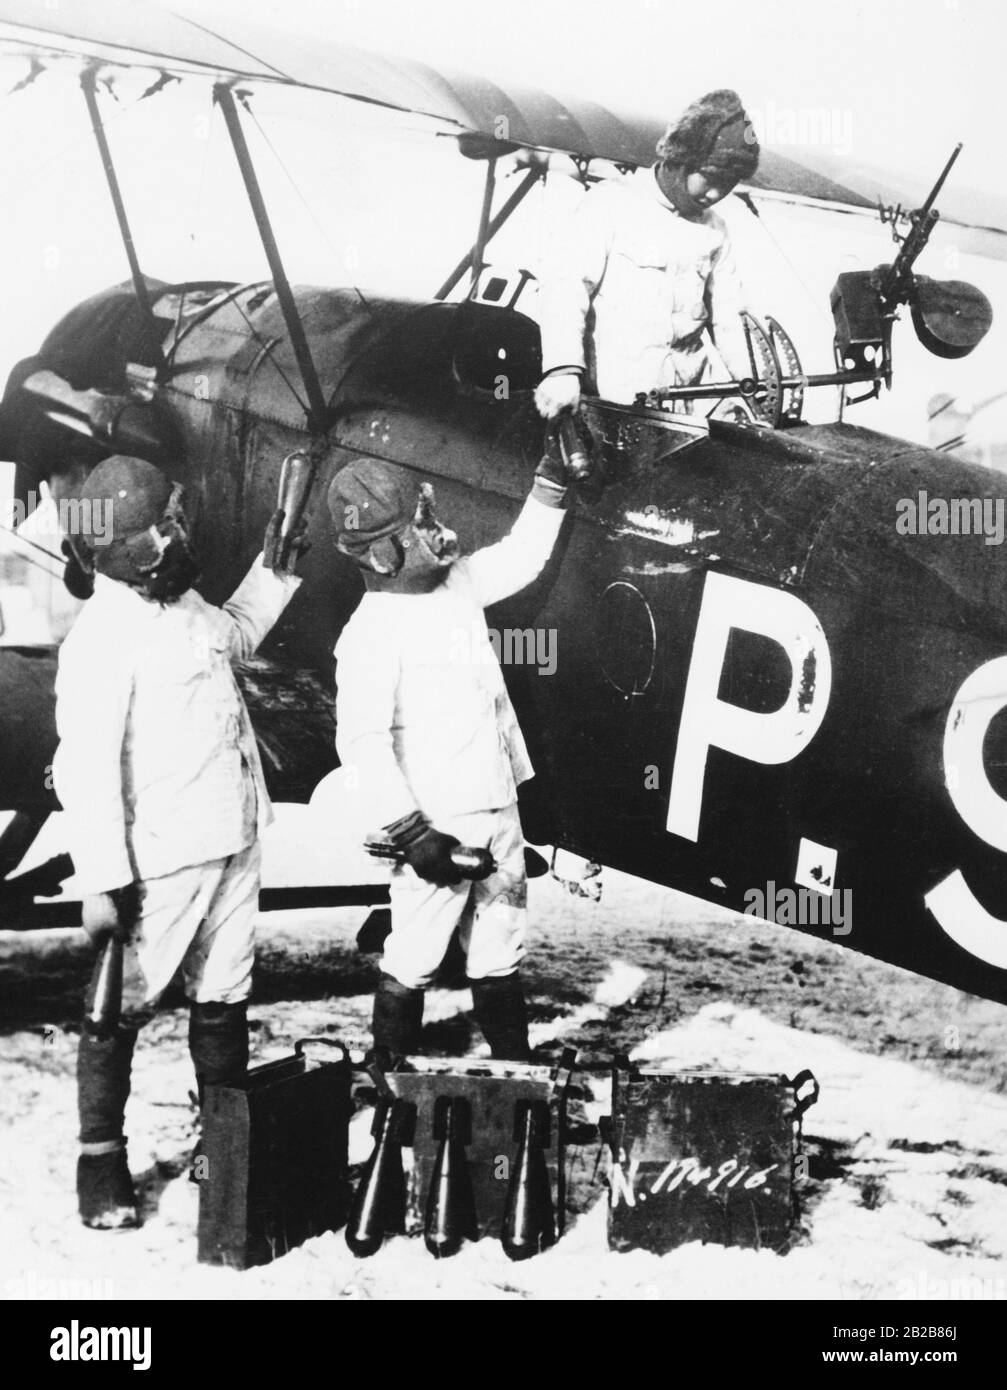 Un avión de combate japonés está cargado con bombas por tres soldados. Estos son arrojados más tarde fuera del avión a mano durante el vuelo. Foto de stock